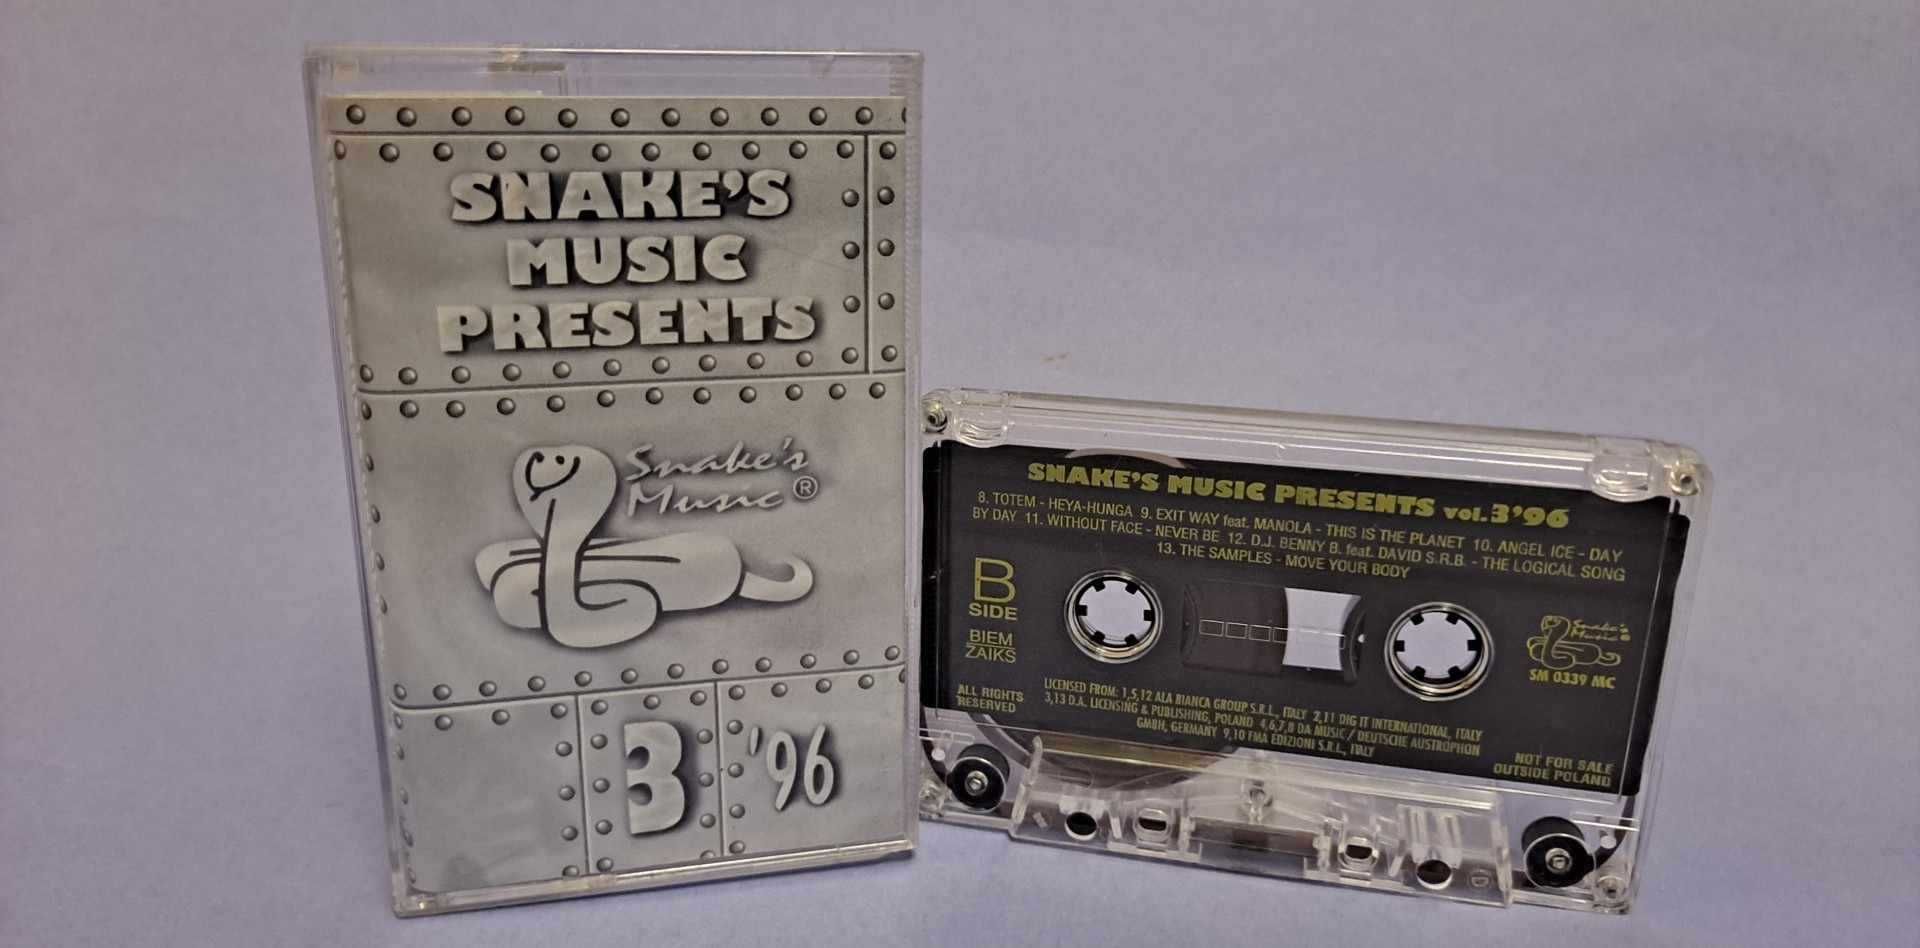 Snake's Music Presents Vol. 3'96 KASETA Z BŁĘDEM 1996